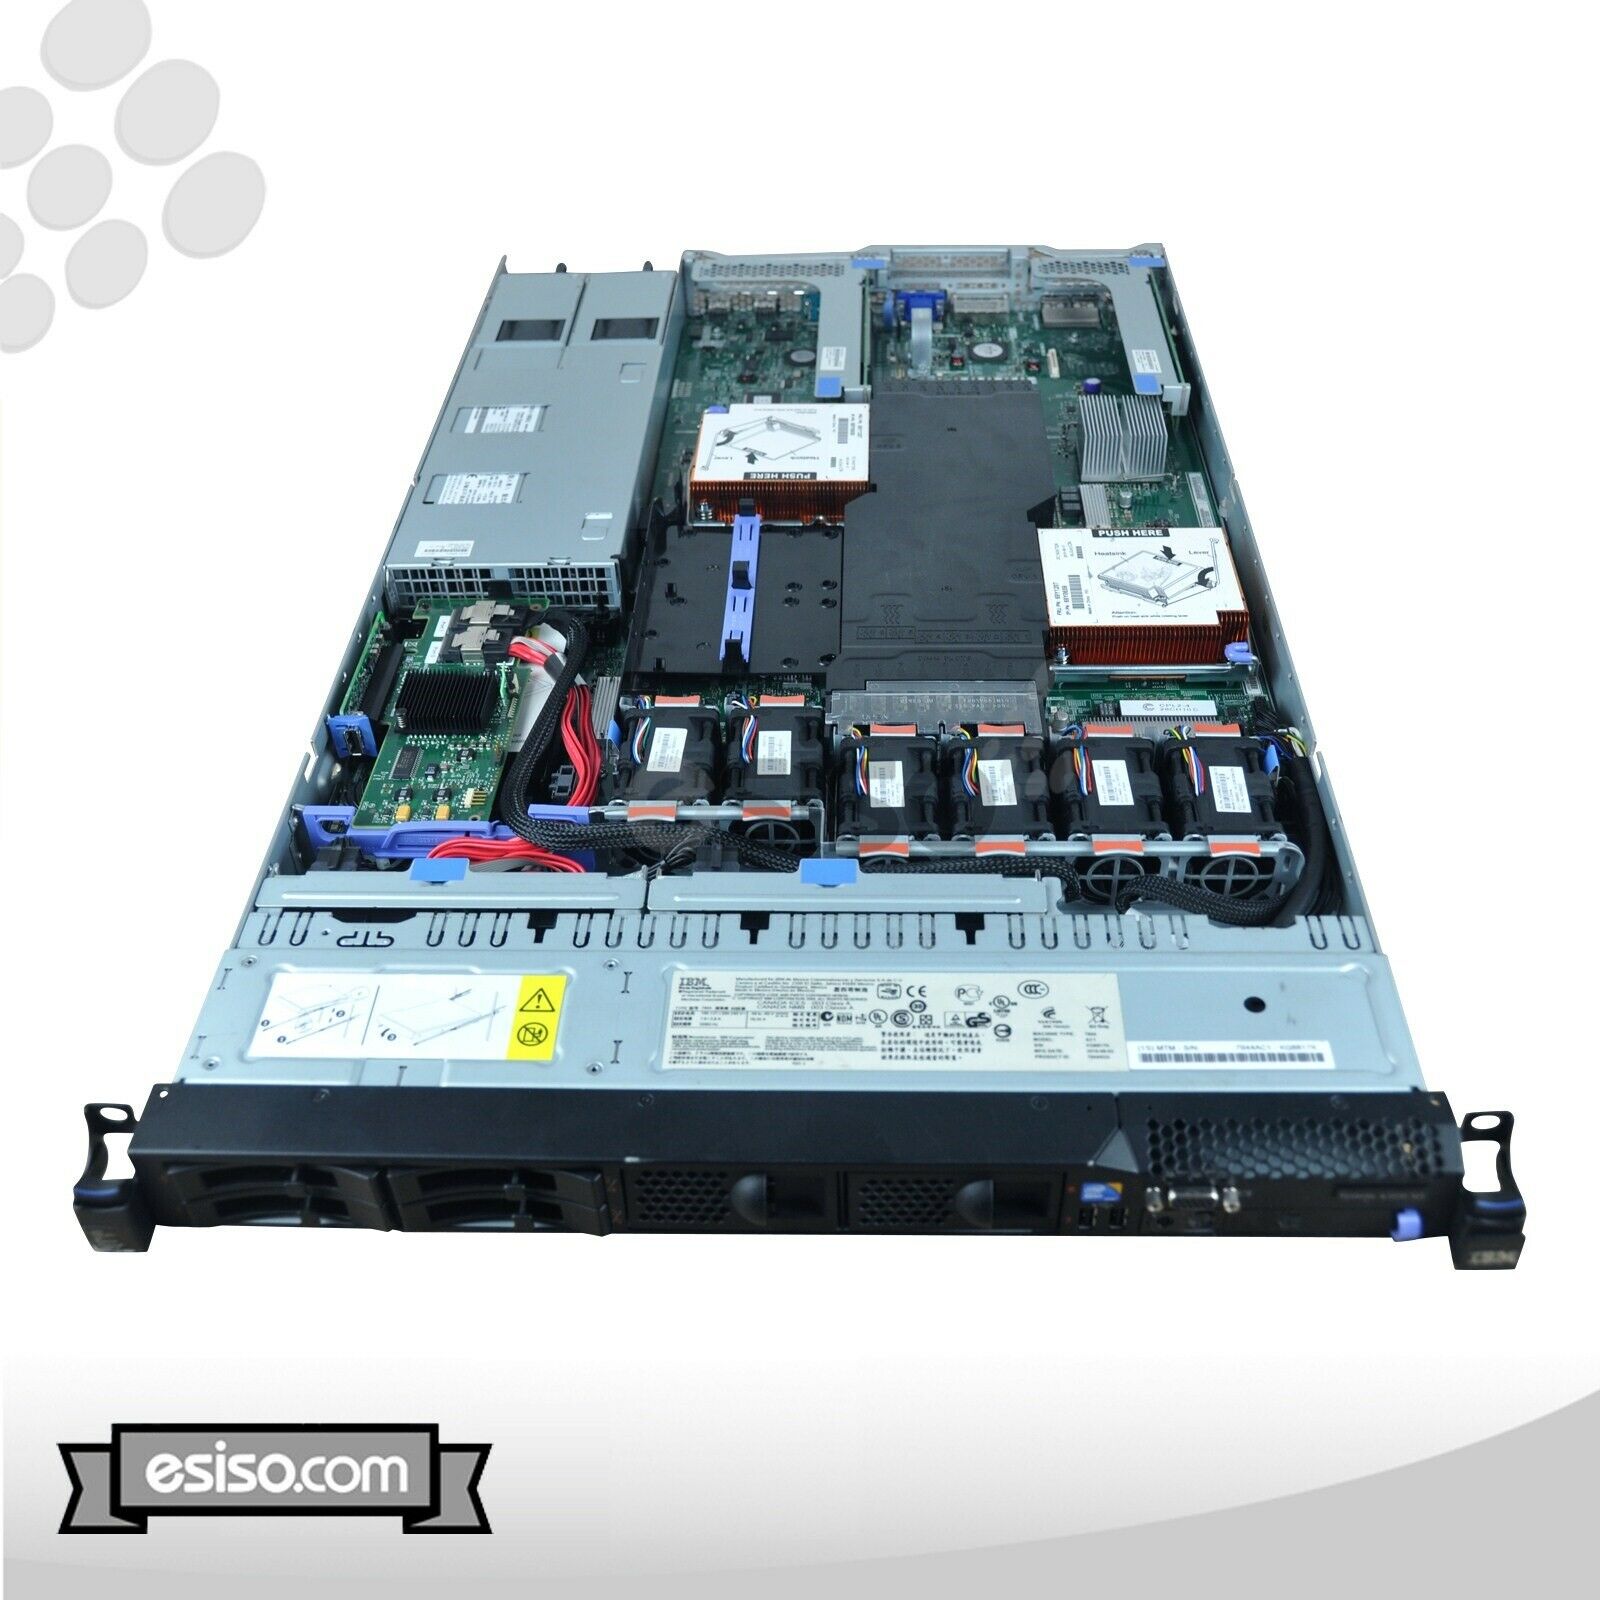 IBM System x3550 M3 7944-AC1 2x SIX CORE X5650 2.66GHz 48GB RAM 4x 146GB 10K SAS